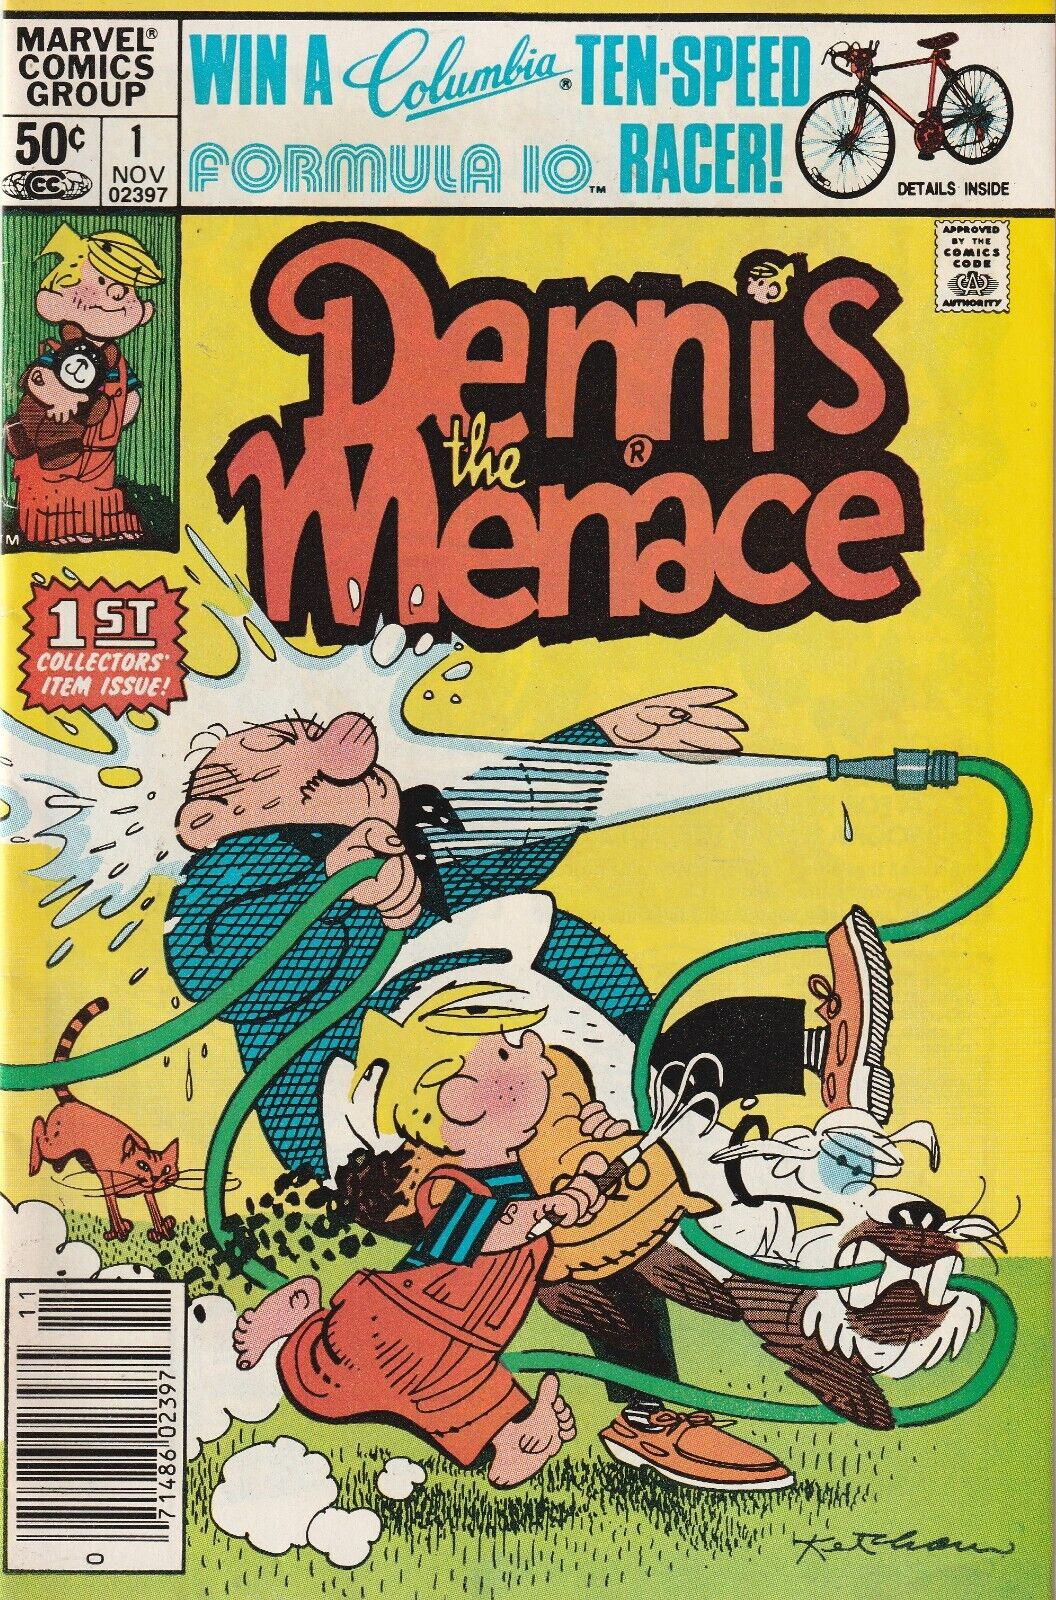 DENNIS THE MENACE #1     NEWSSTAND VARIANT  MARVEL  1981  NICE!!!